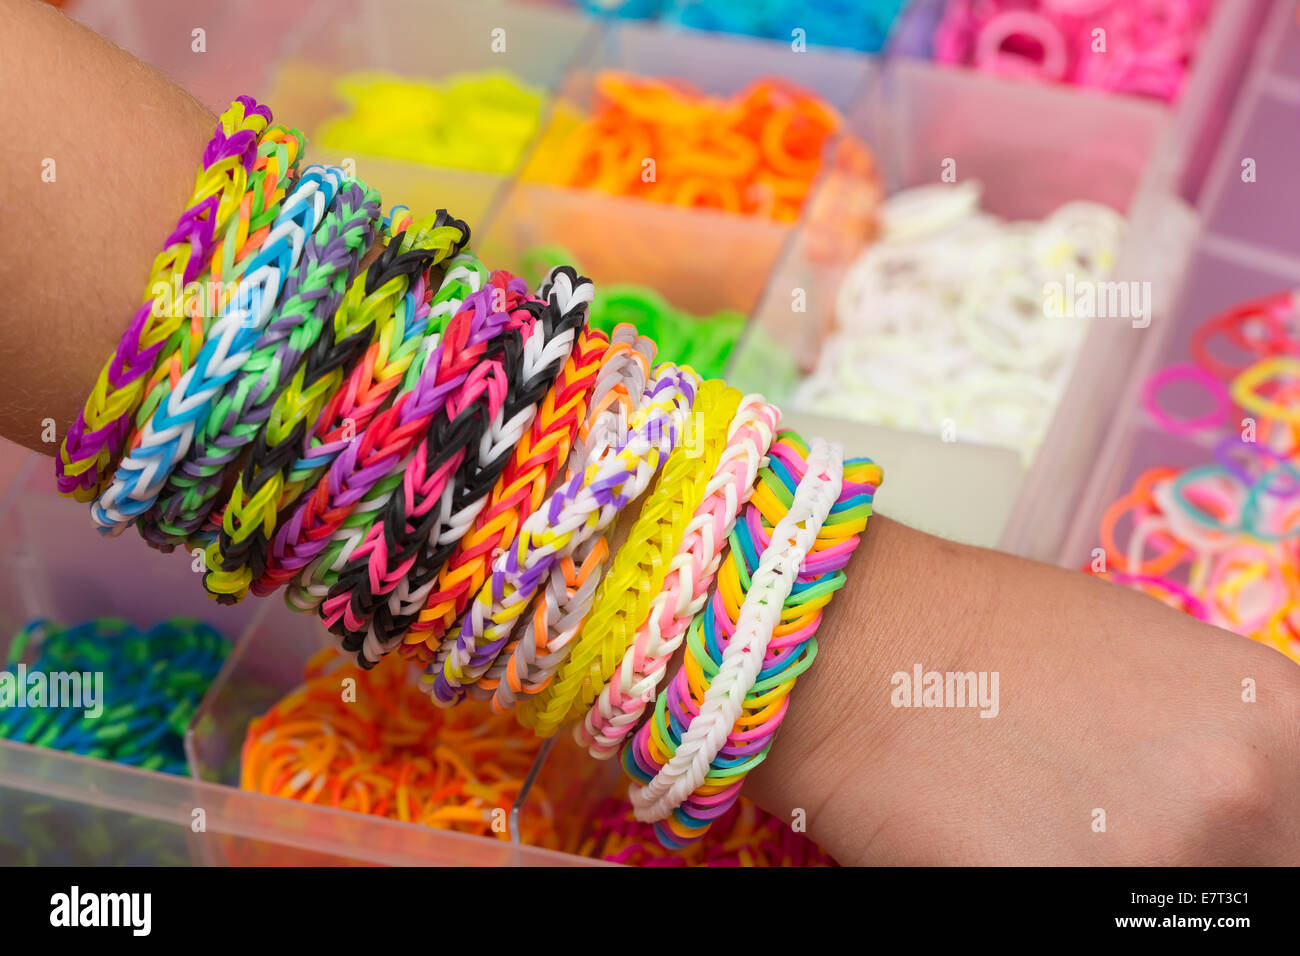 Rainbow rubber band bracelet isolated on white Stock Photo - Alamy